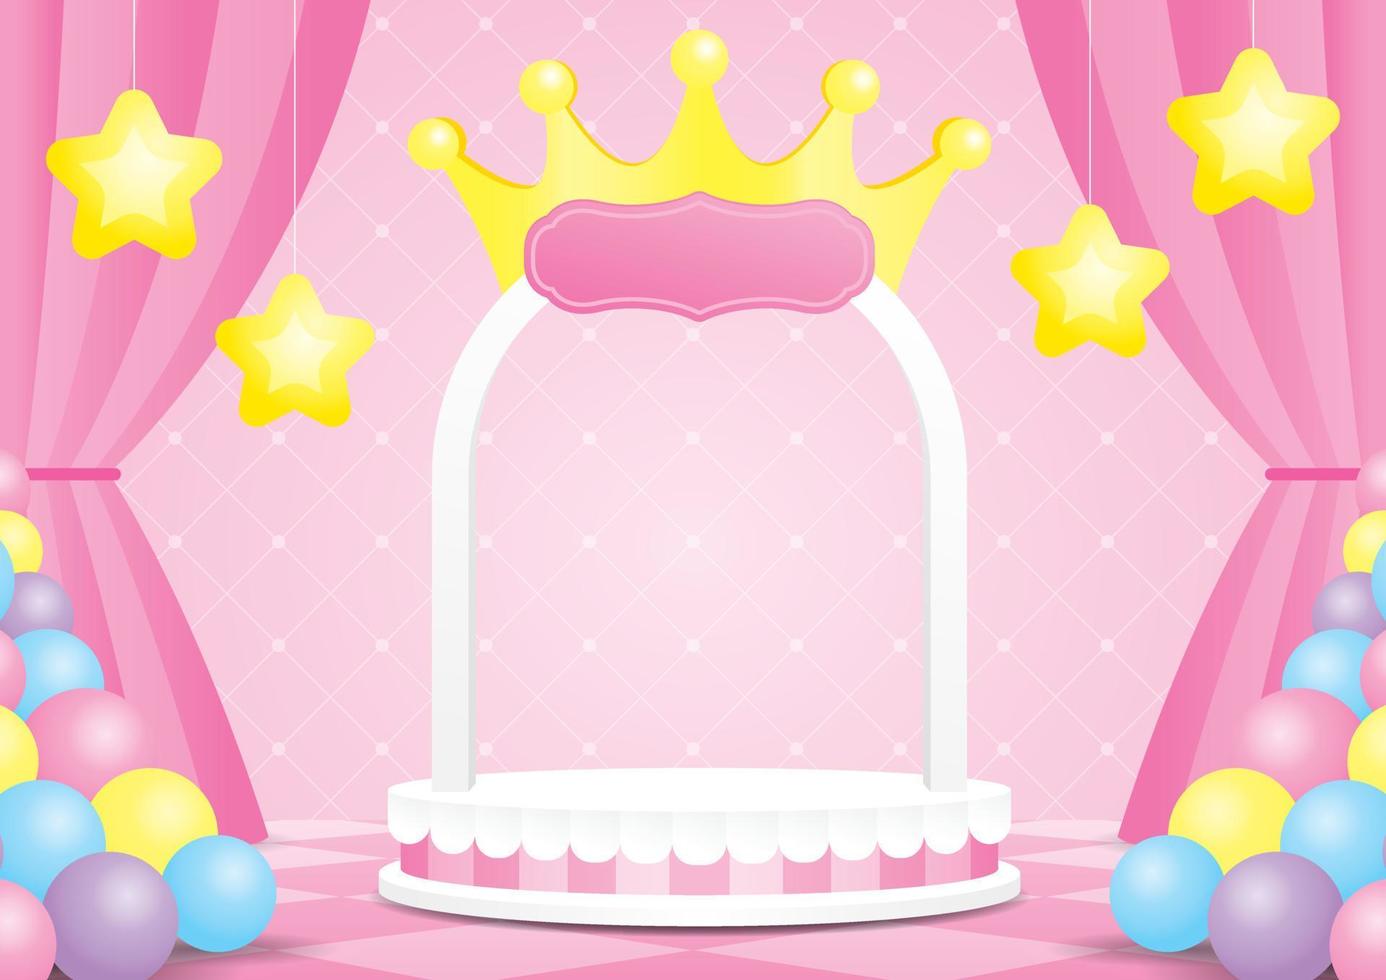 carino kawaii principessa display a tema illustrazione 3d vettore composto da palco ad arco con forma a corona e stelle prop su pavimento a scacchi e parete dolce con tenda rosa e palloncini colorati pastello